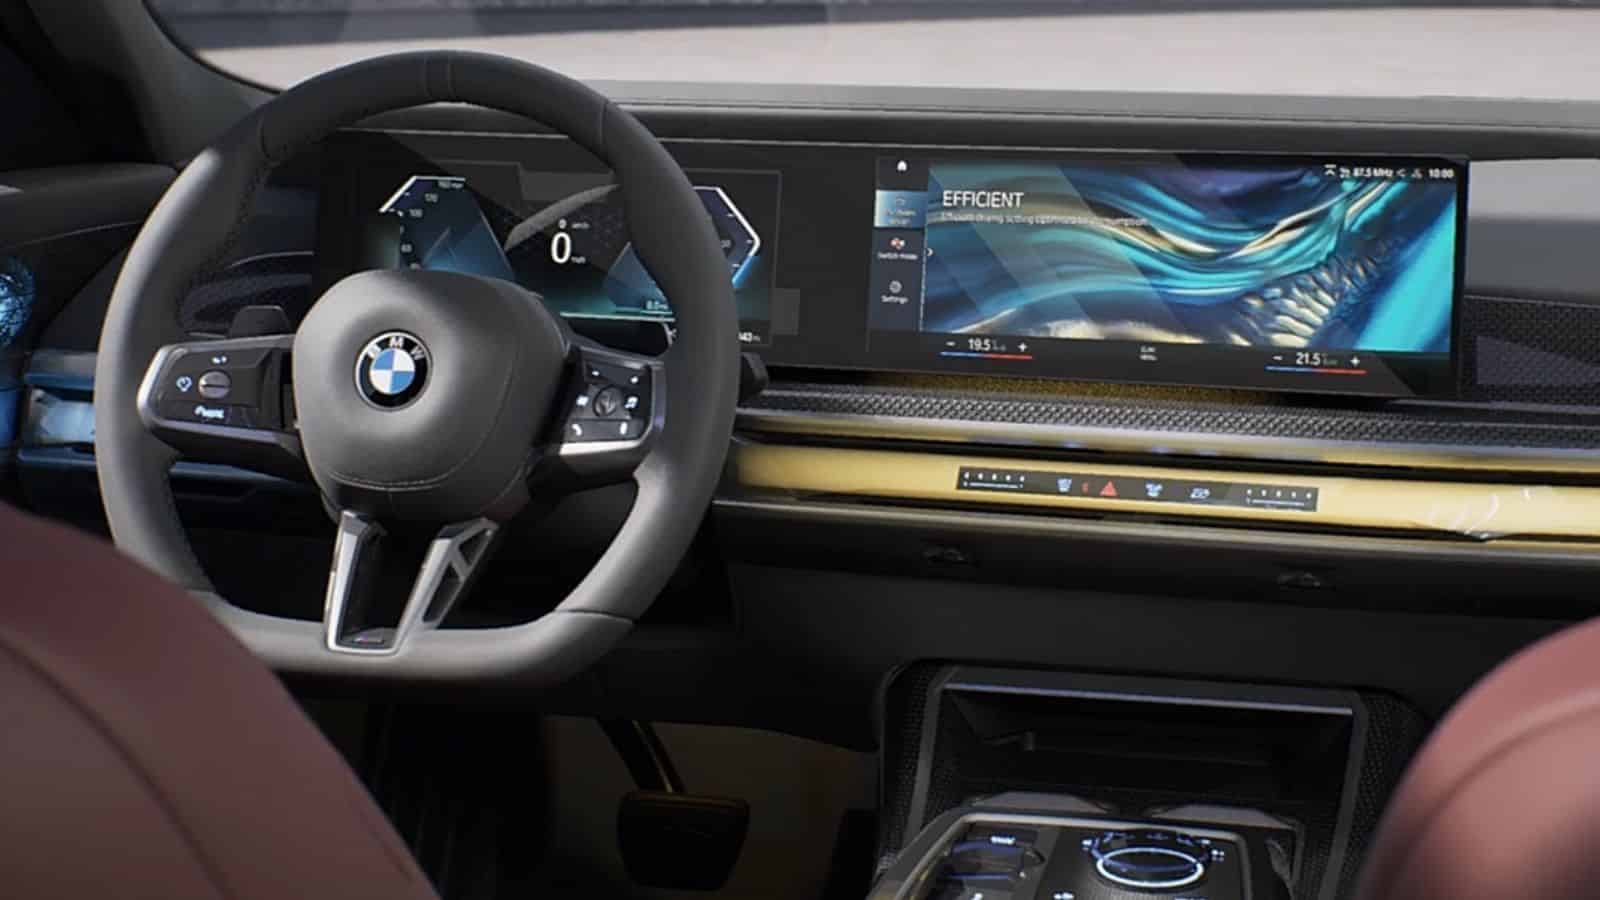 BMW innalza i livelli di tecnologia per la guida autonoma